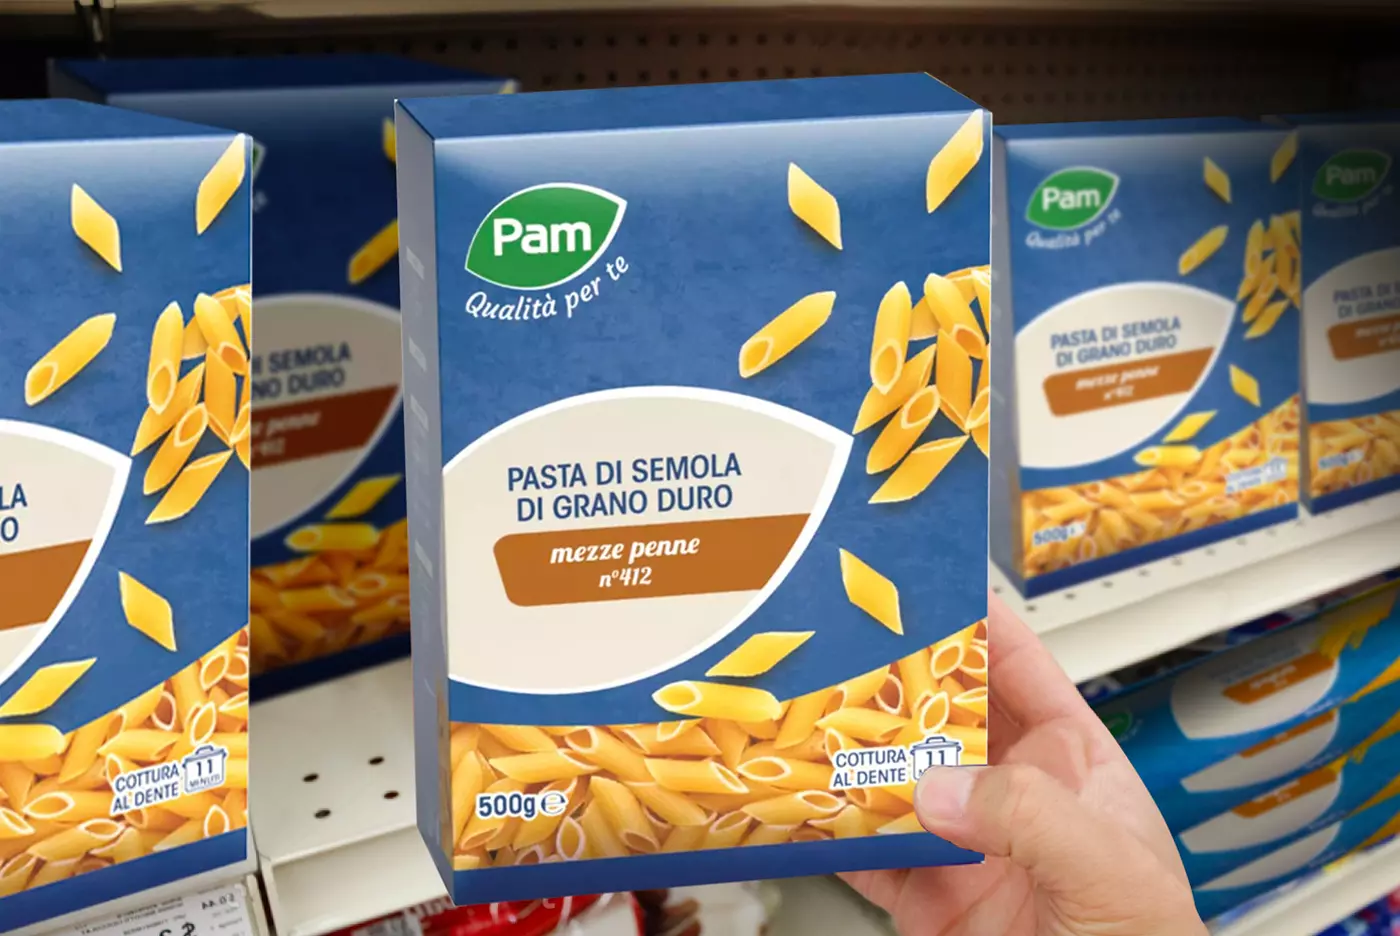 Visualizzazione dello scaffale del supermercato pieno di confezioni di pasta PAM